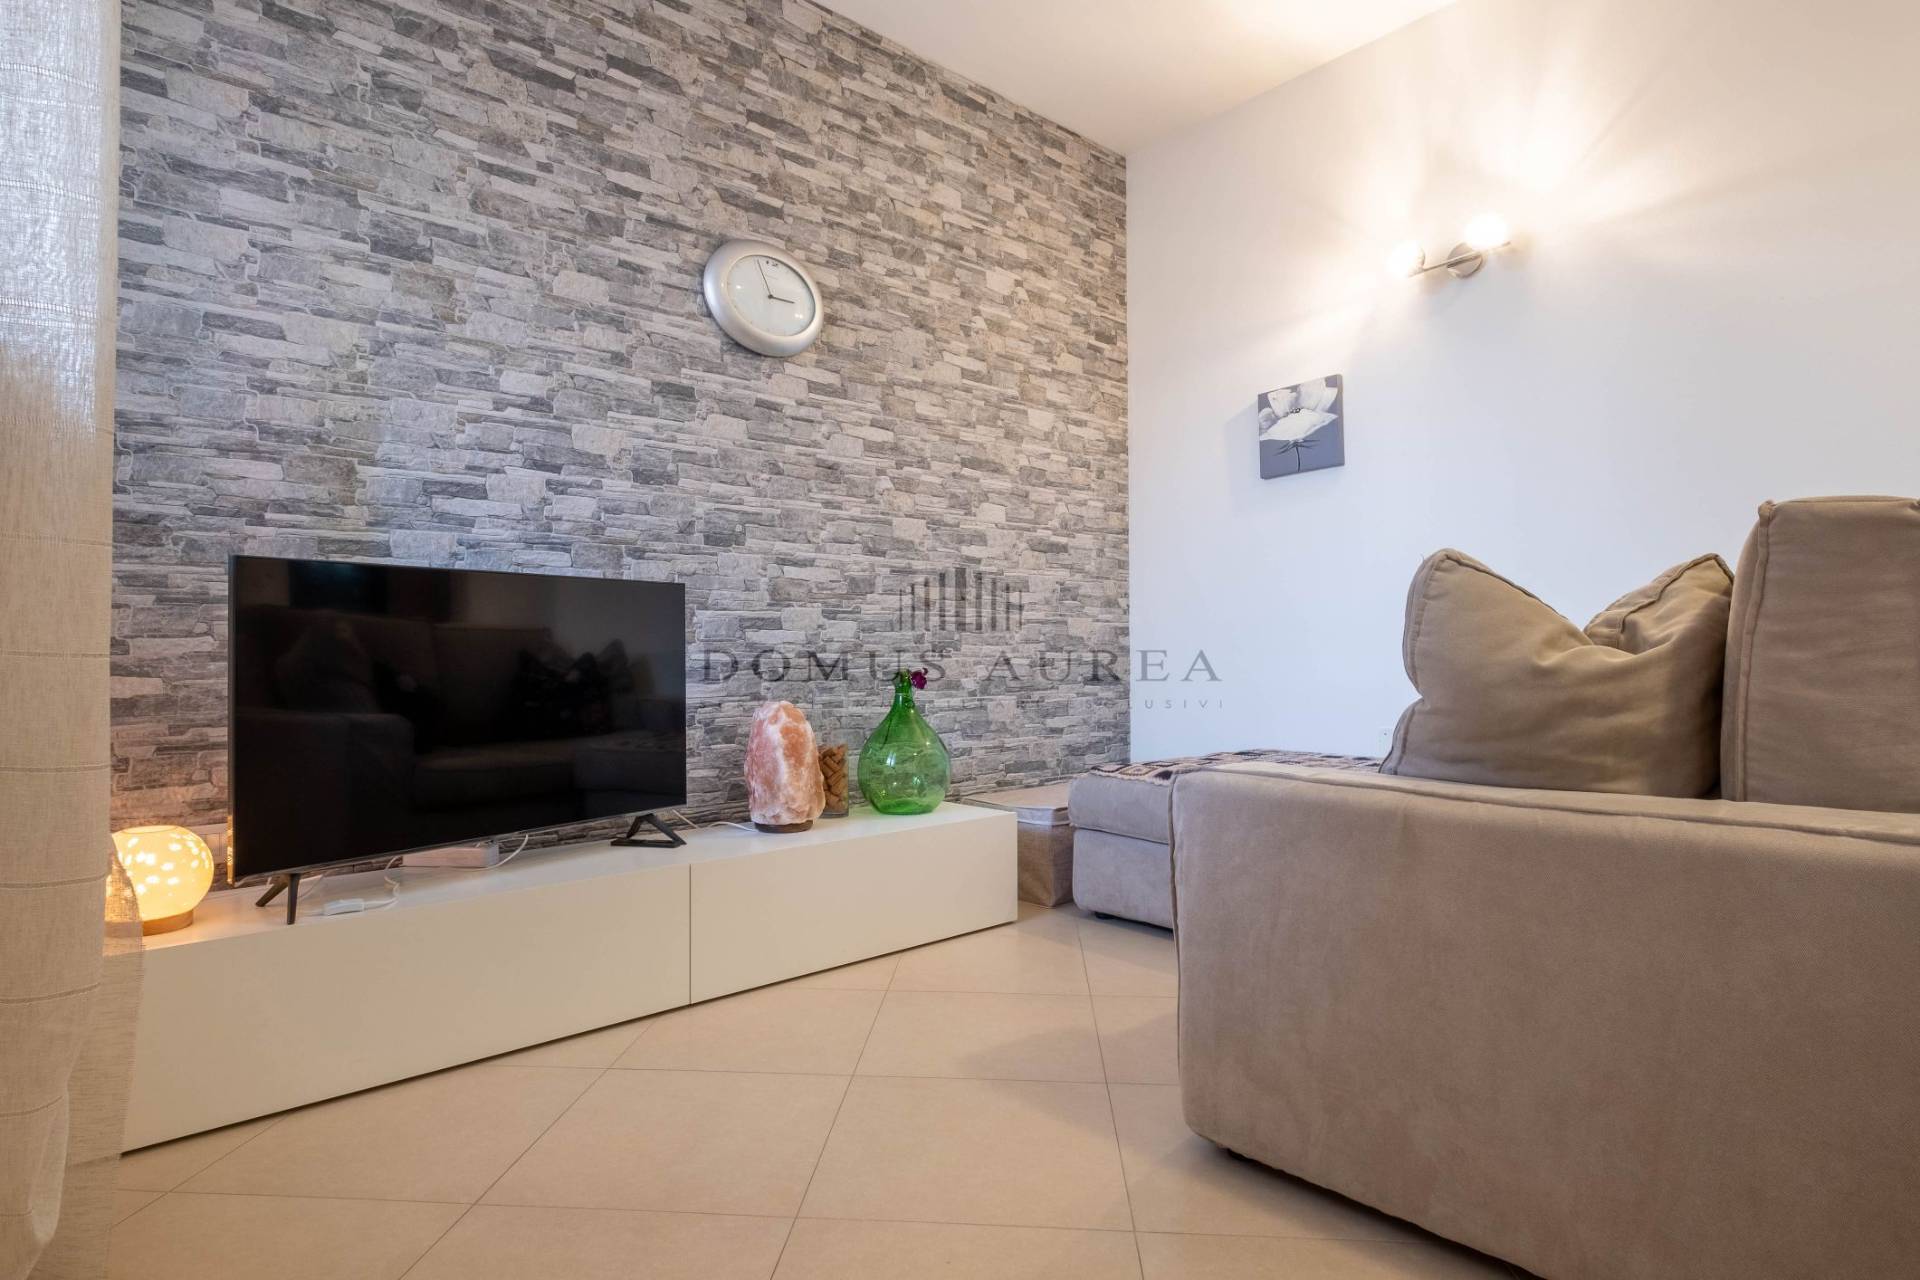 Appartamento in vendita a Montecchia di Crosara, 3 locali, prezzo € 90.000 | PortaleAgenzieImmobiliari.it